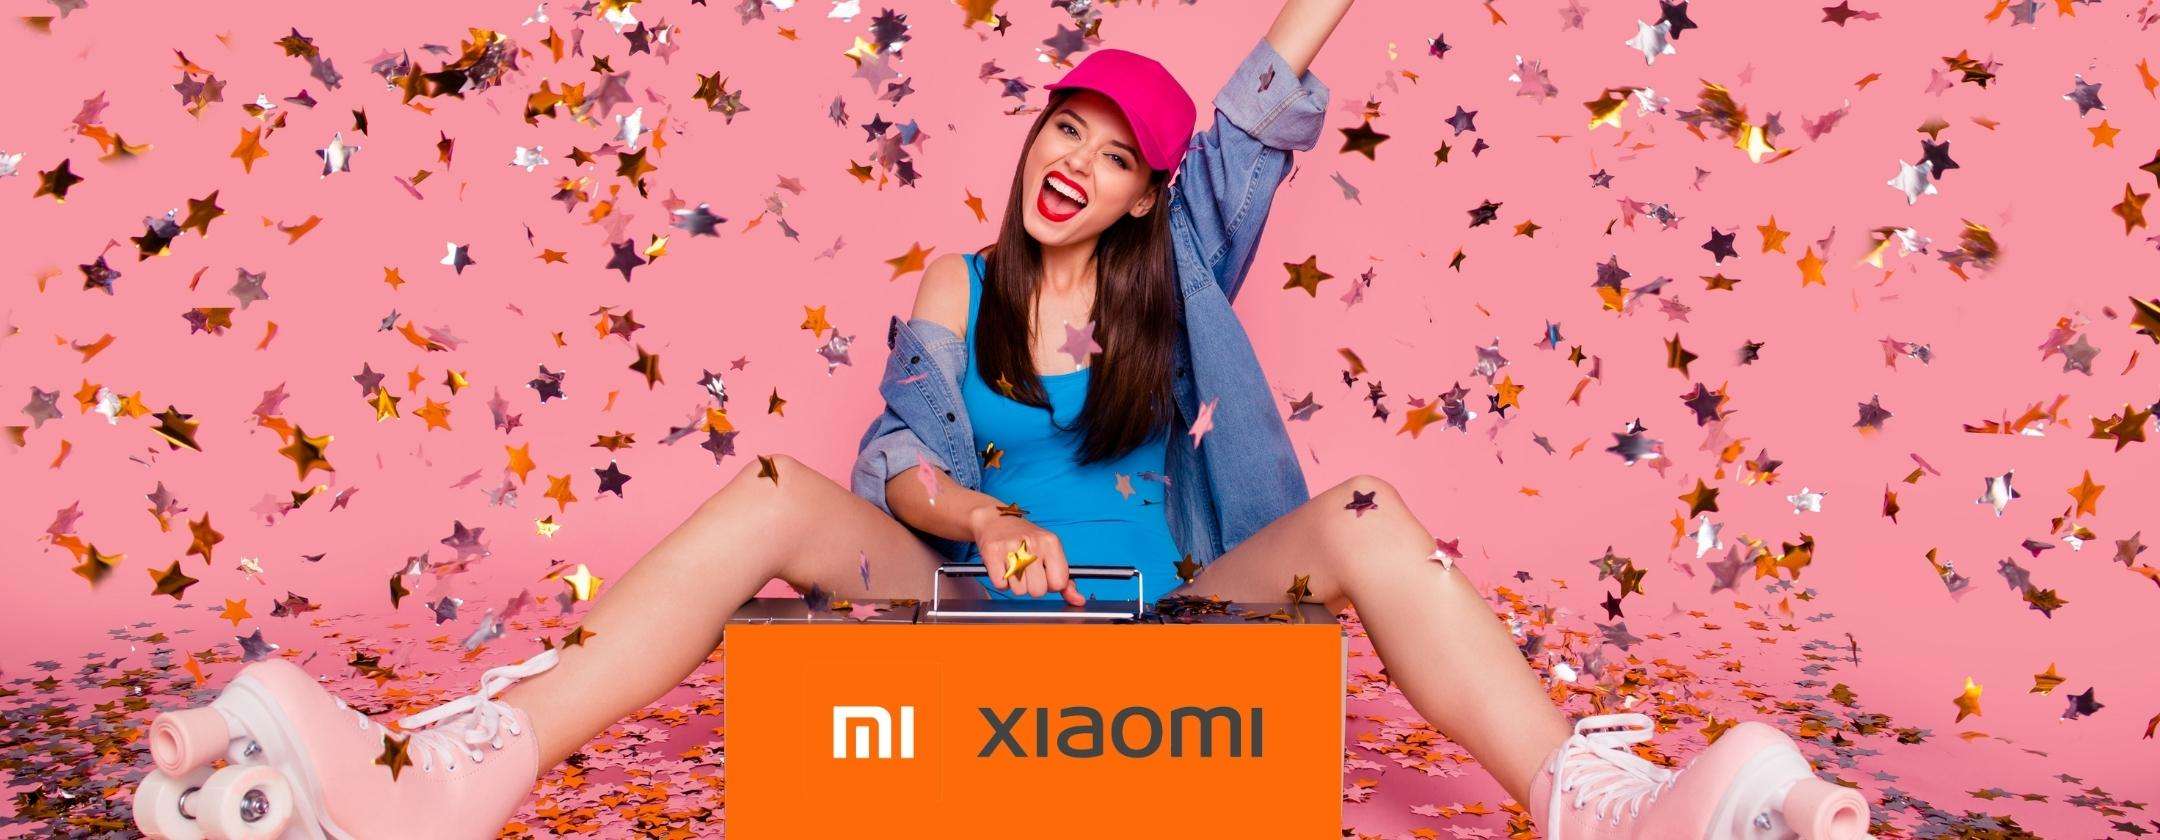 Tutti i prodotti Xiaomi che vuoi a prezzi BOMBA grazie alle offerte Unieuro